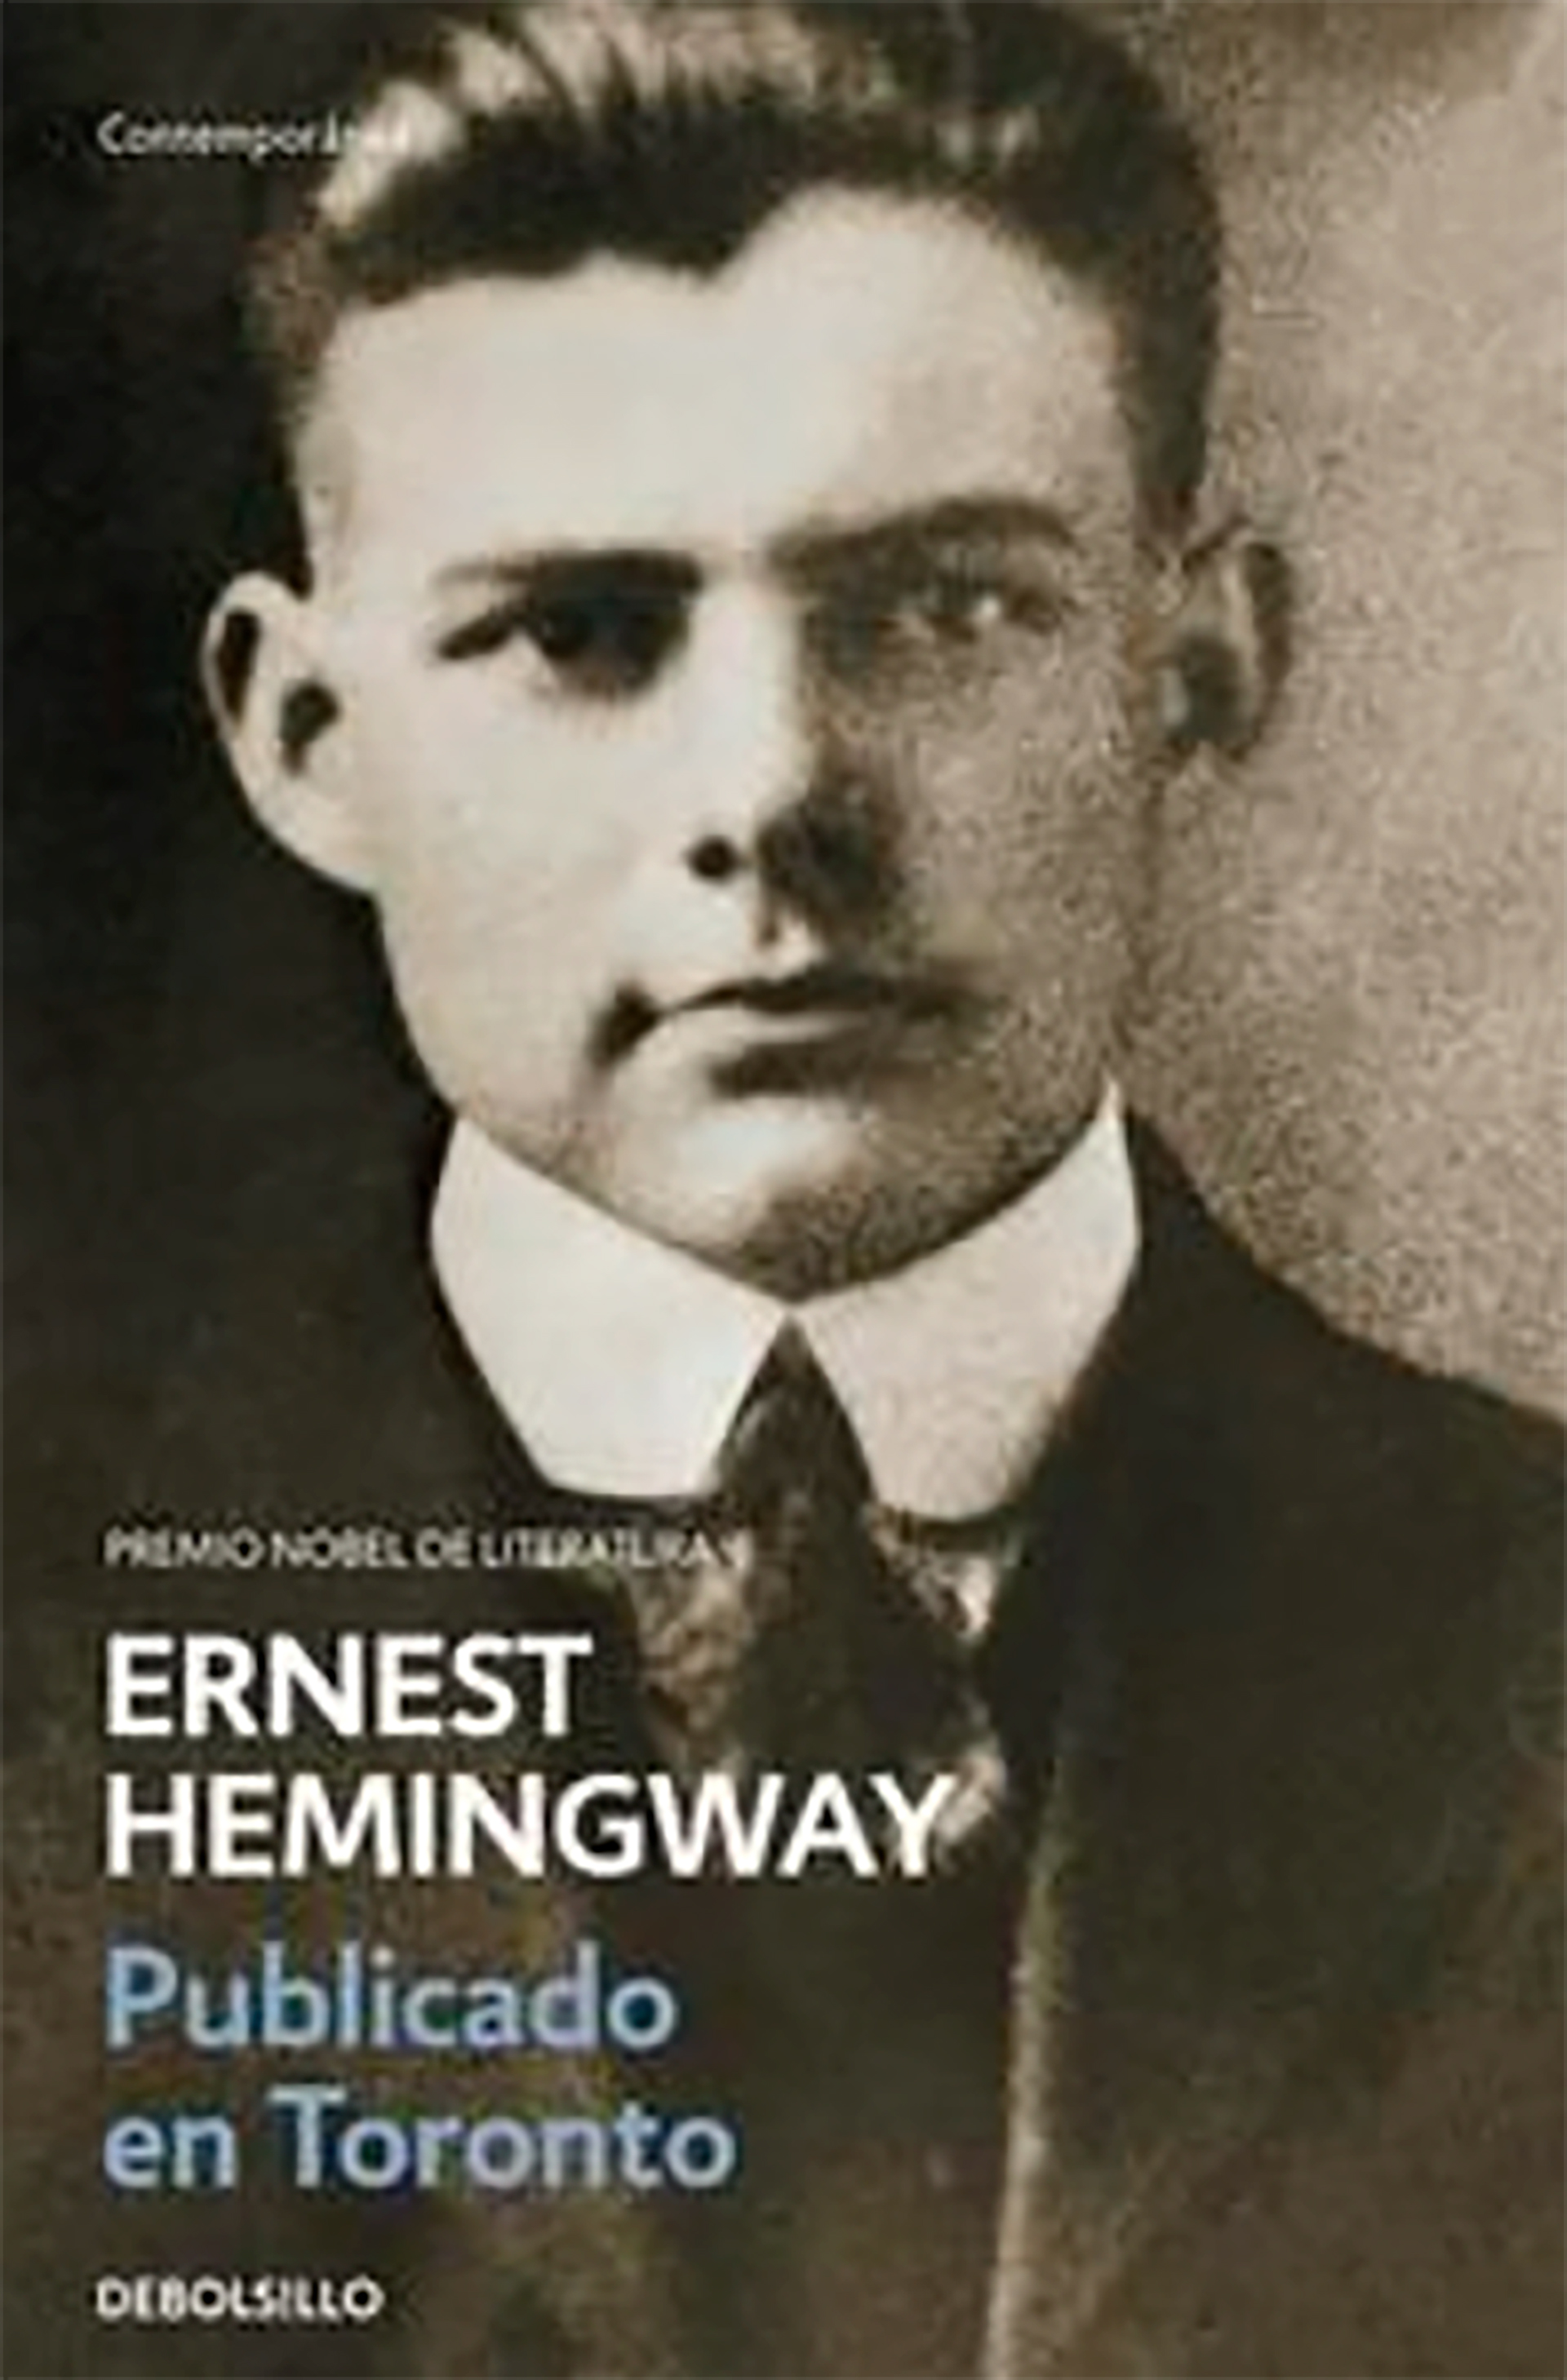 La tapa del libro con las crónicas que entre 1920 y 1924 escribió Hemingway para el Toronto Daily Star